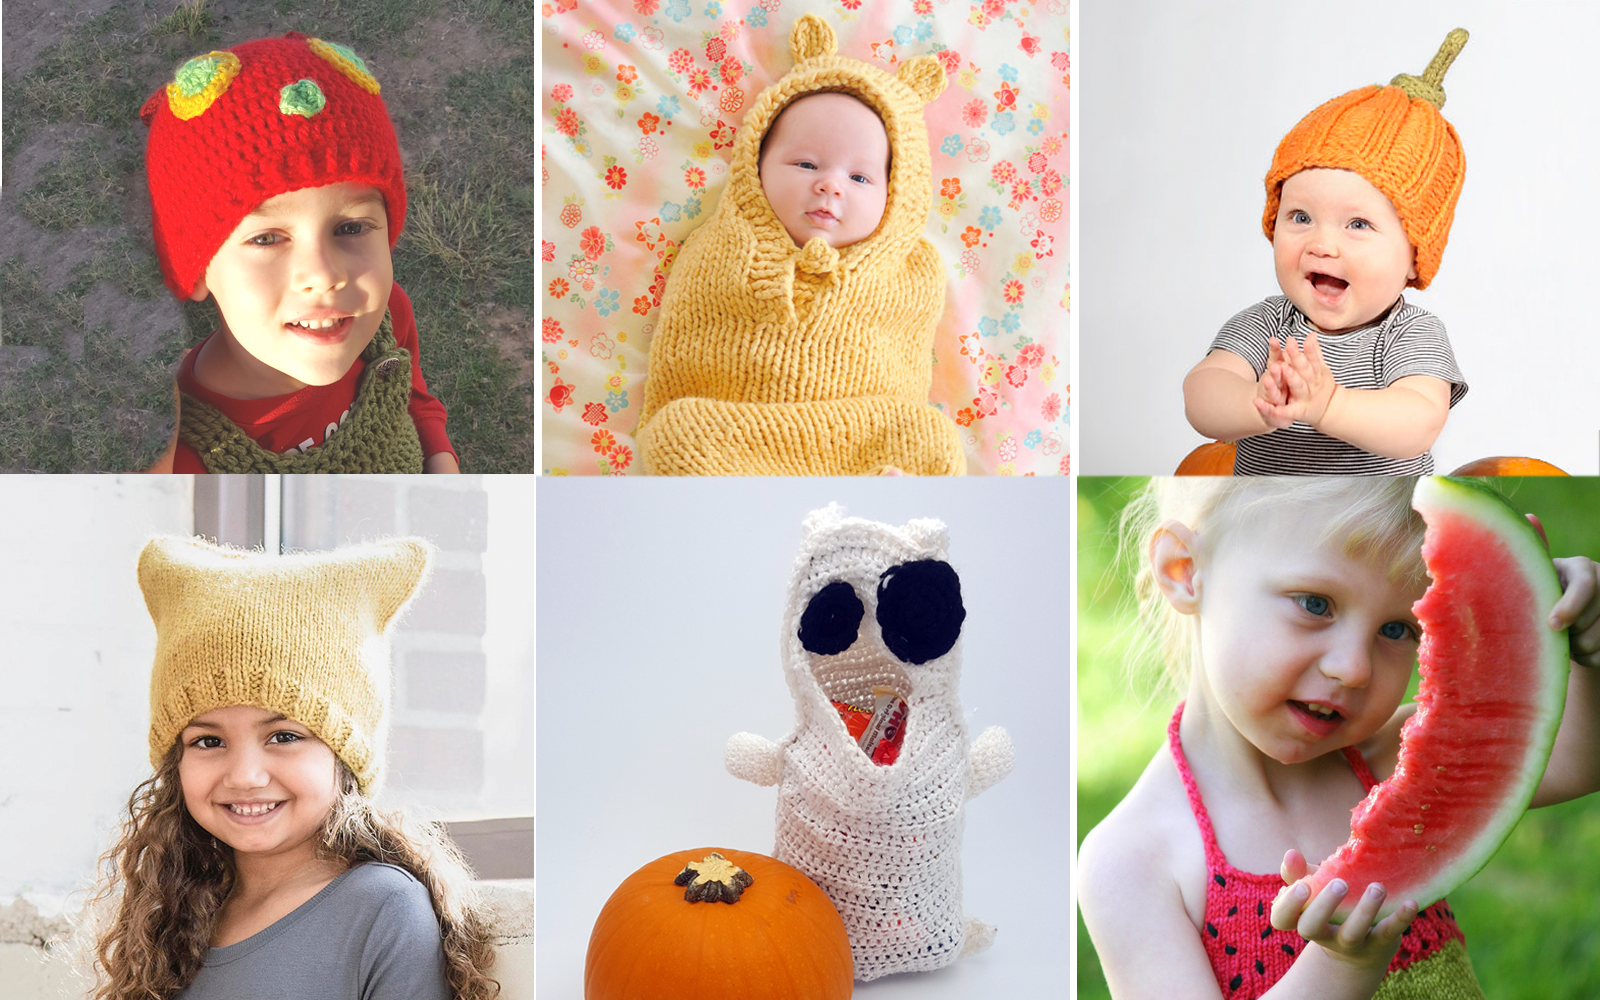 Halloween Part I - Children's Costumes